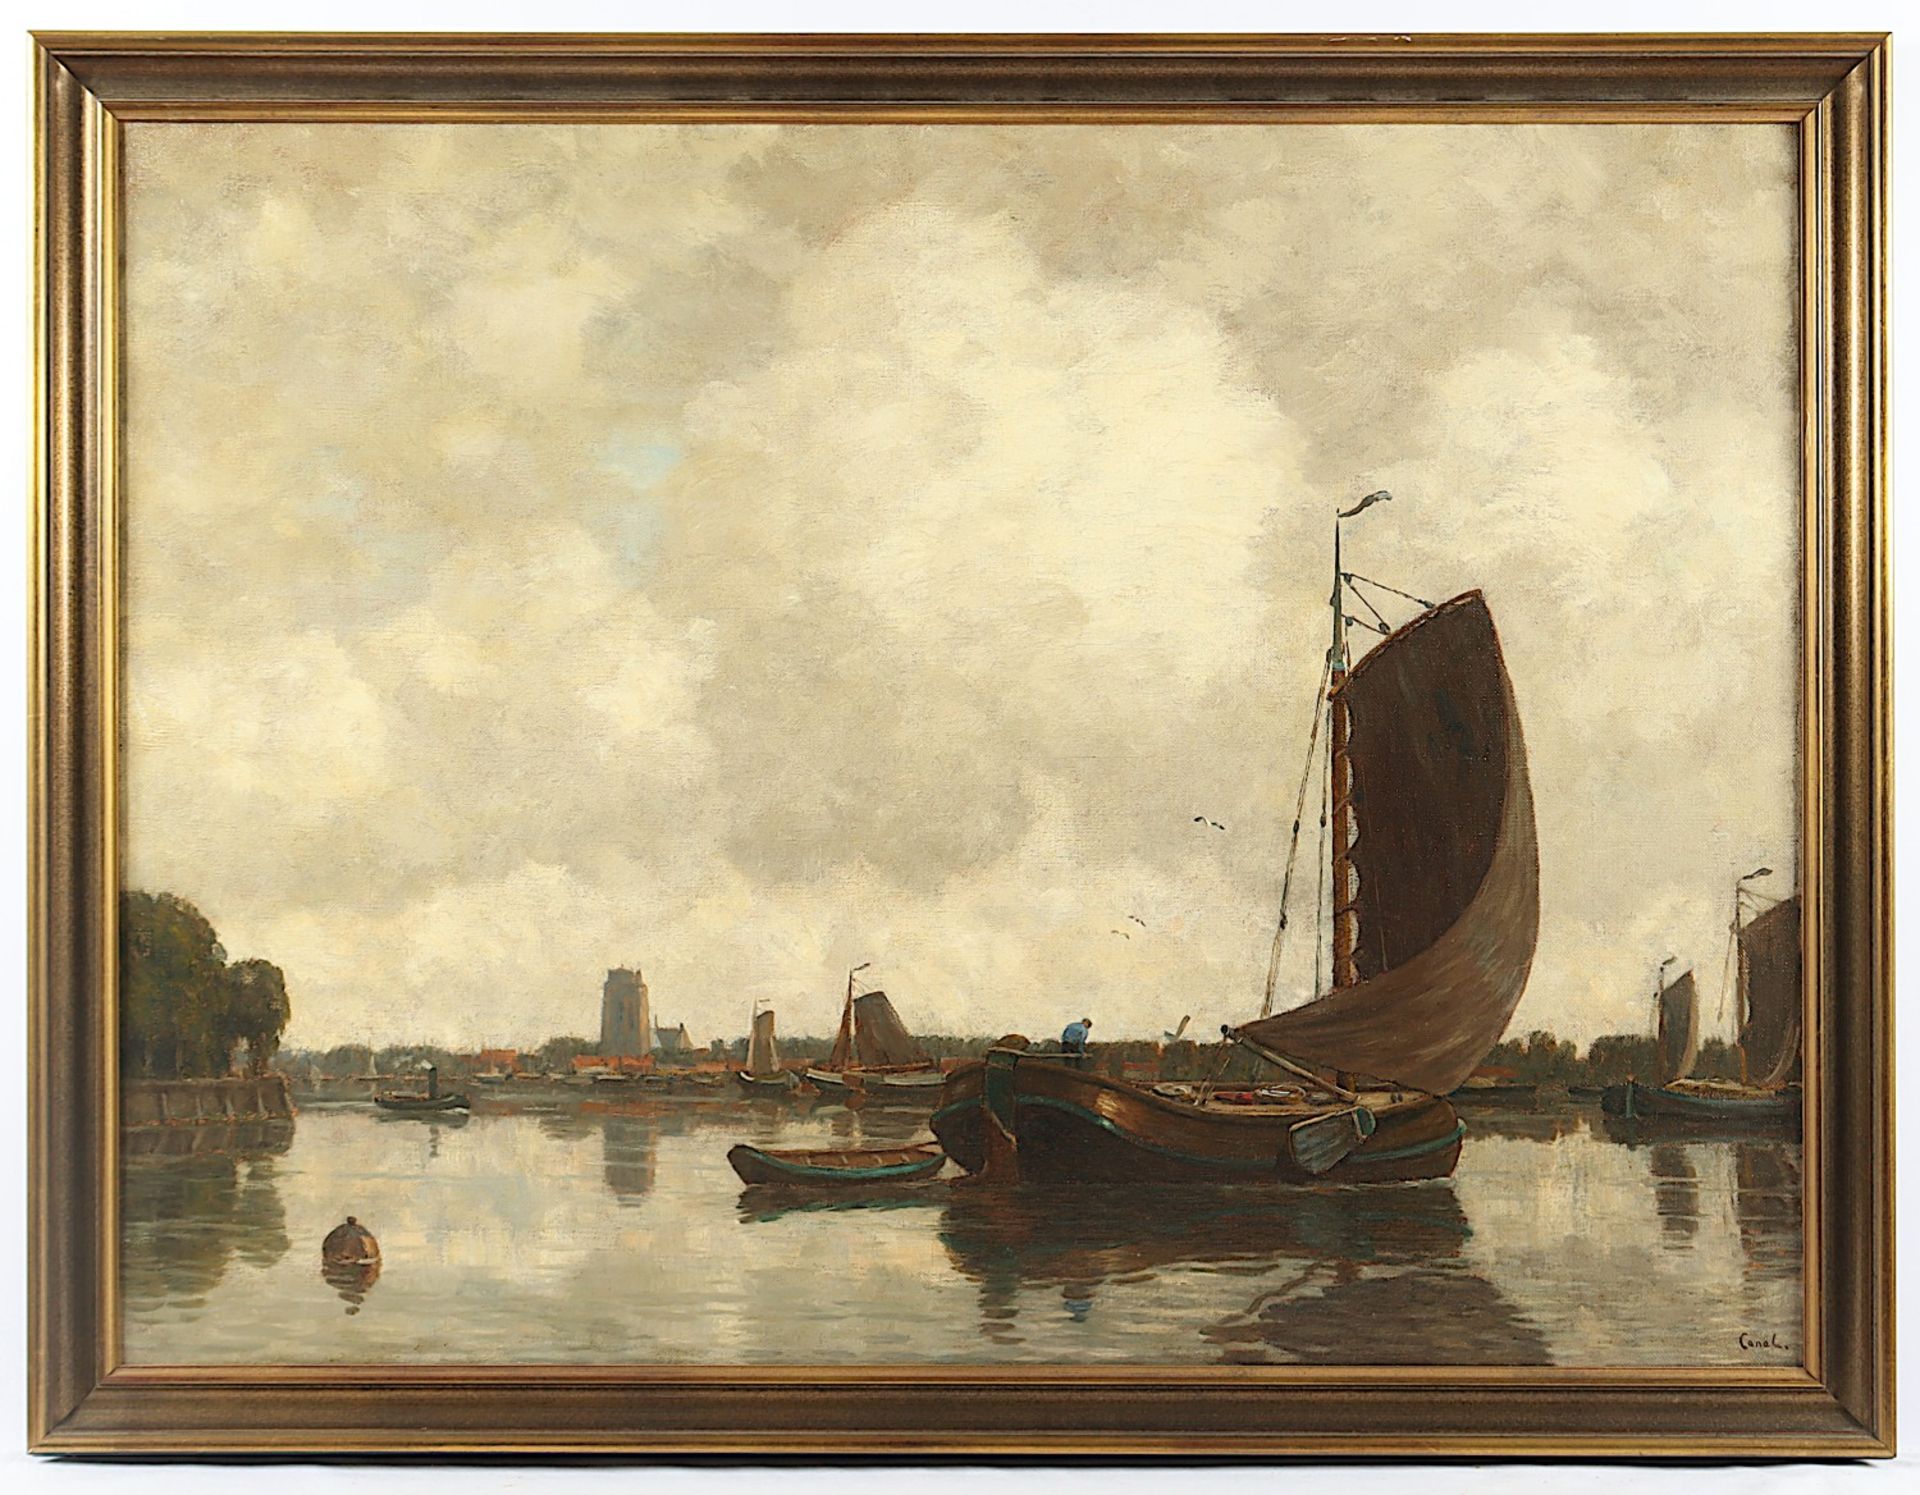 CANAL, Gilbert von (1849-1927), "Blick